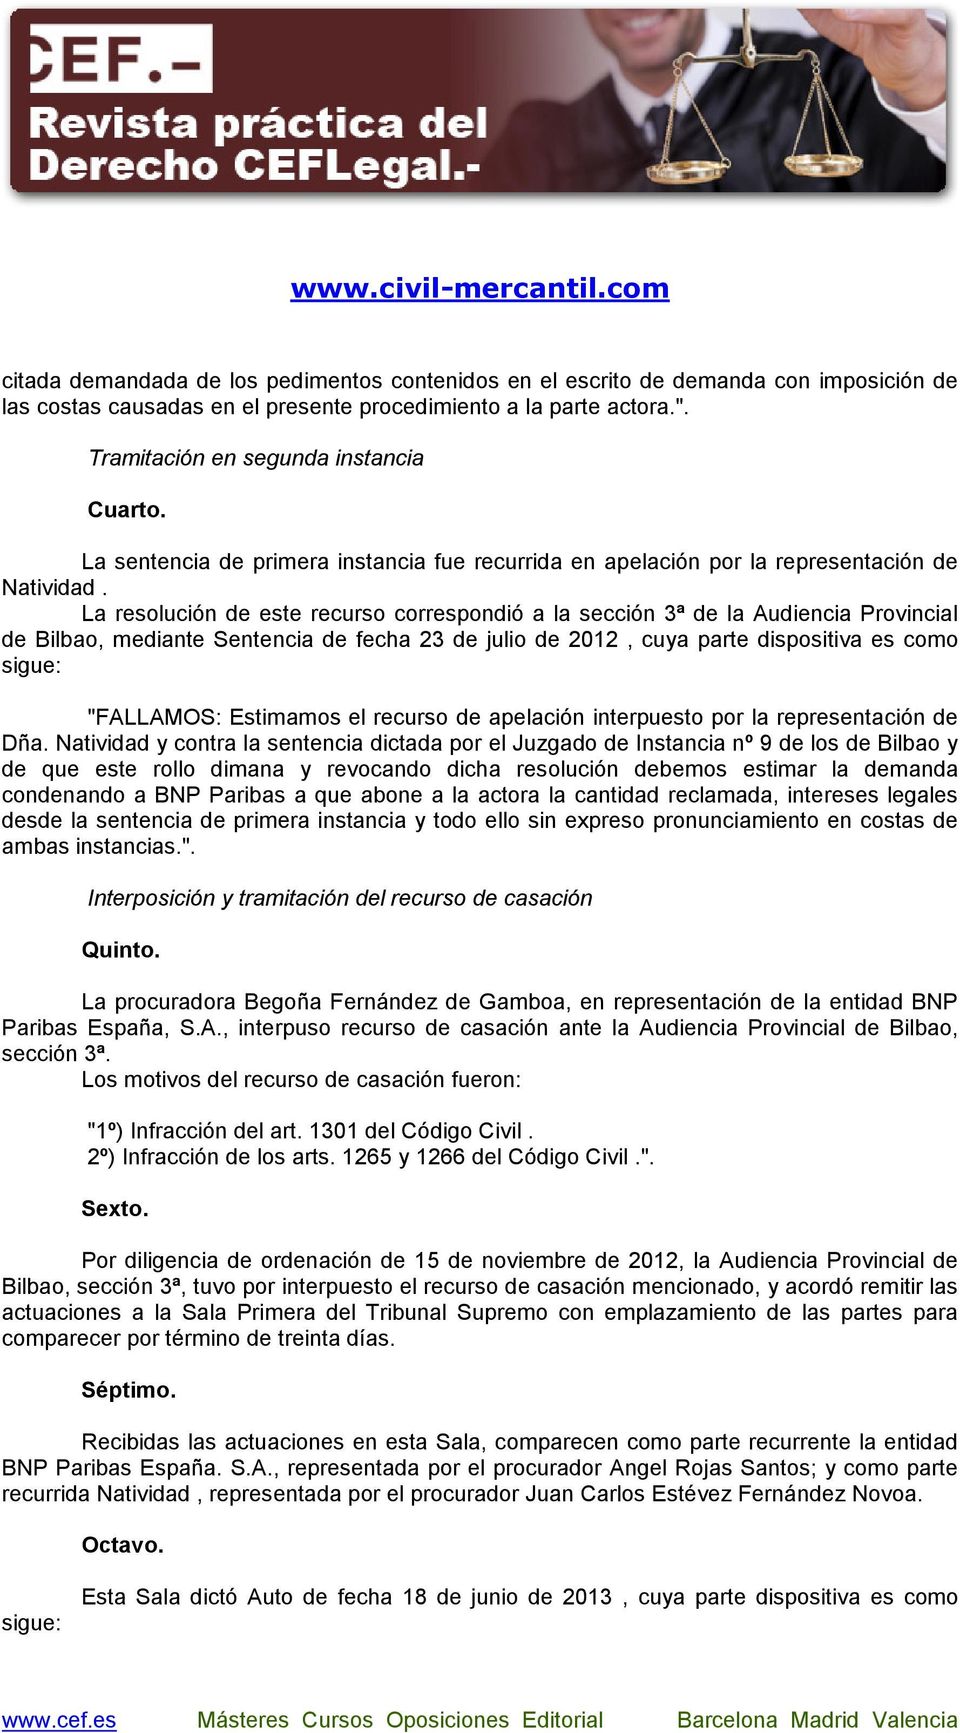 La resolución de este recurso correspondió a la sección 3ª de la Audiencia Provincial de Bilbao, mediante Sentencia de fecha 23 de julio de 2012, cuya parte dispositiva es como sigue: "FALLAMOS: